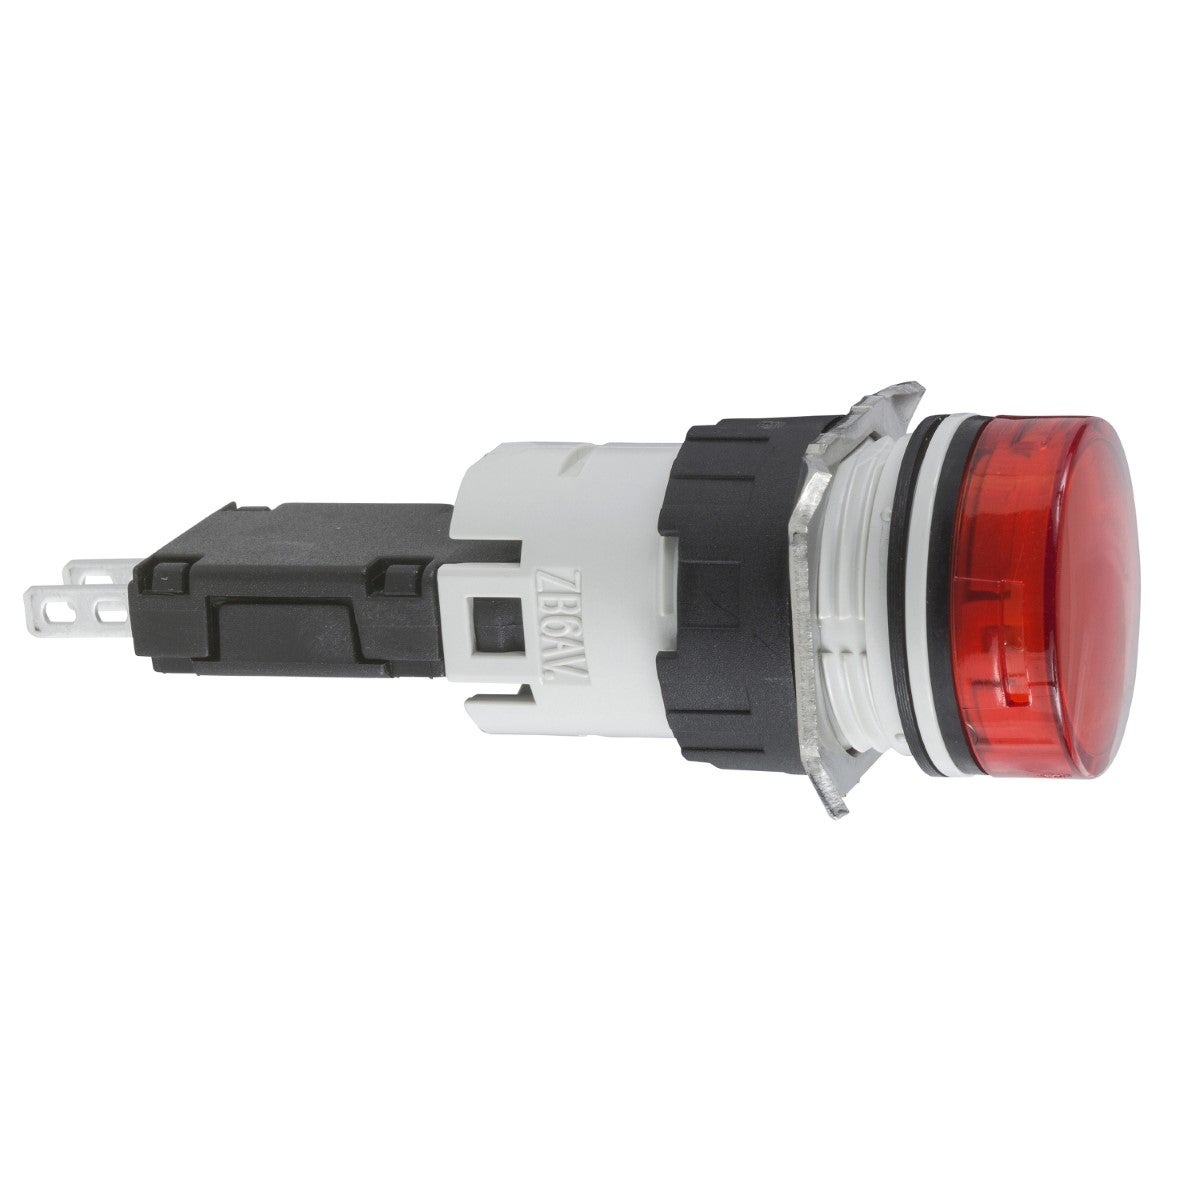 Complete pilot light, Harmony XB6, round red, plastic, 16mm, integral LED 12...24V